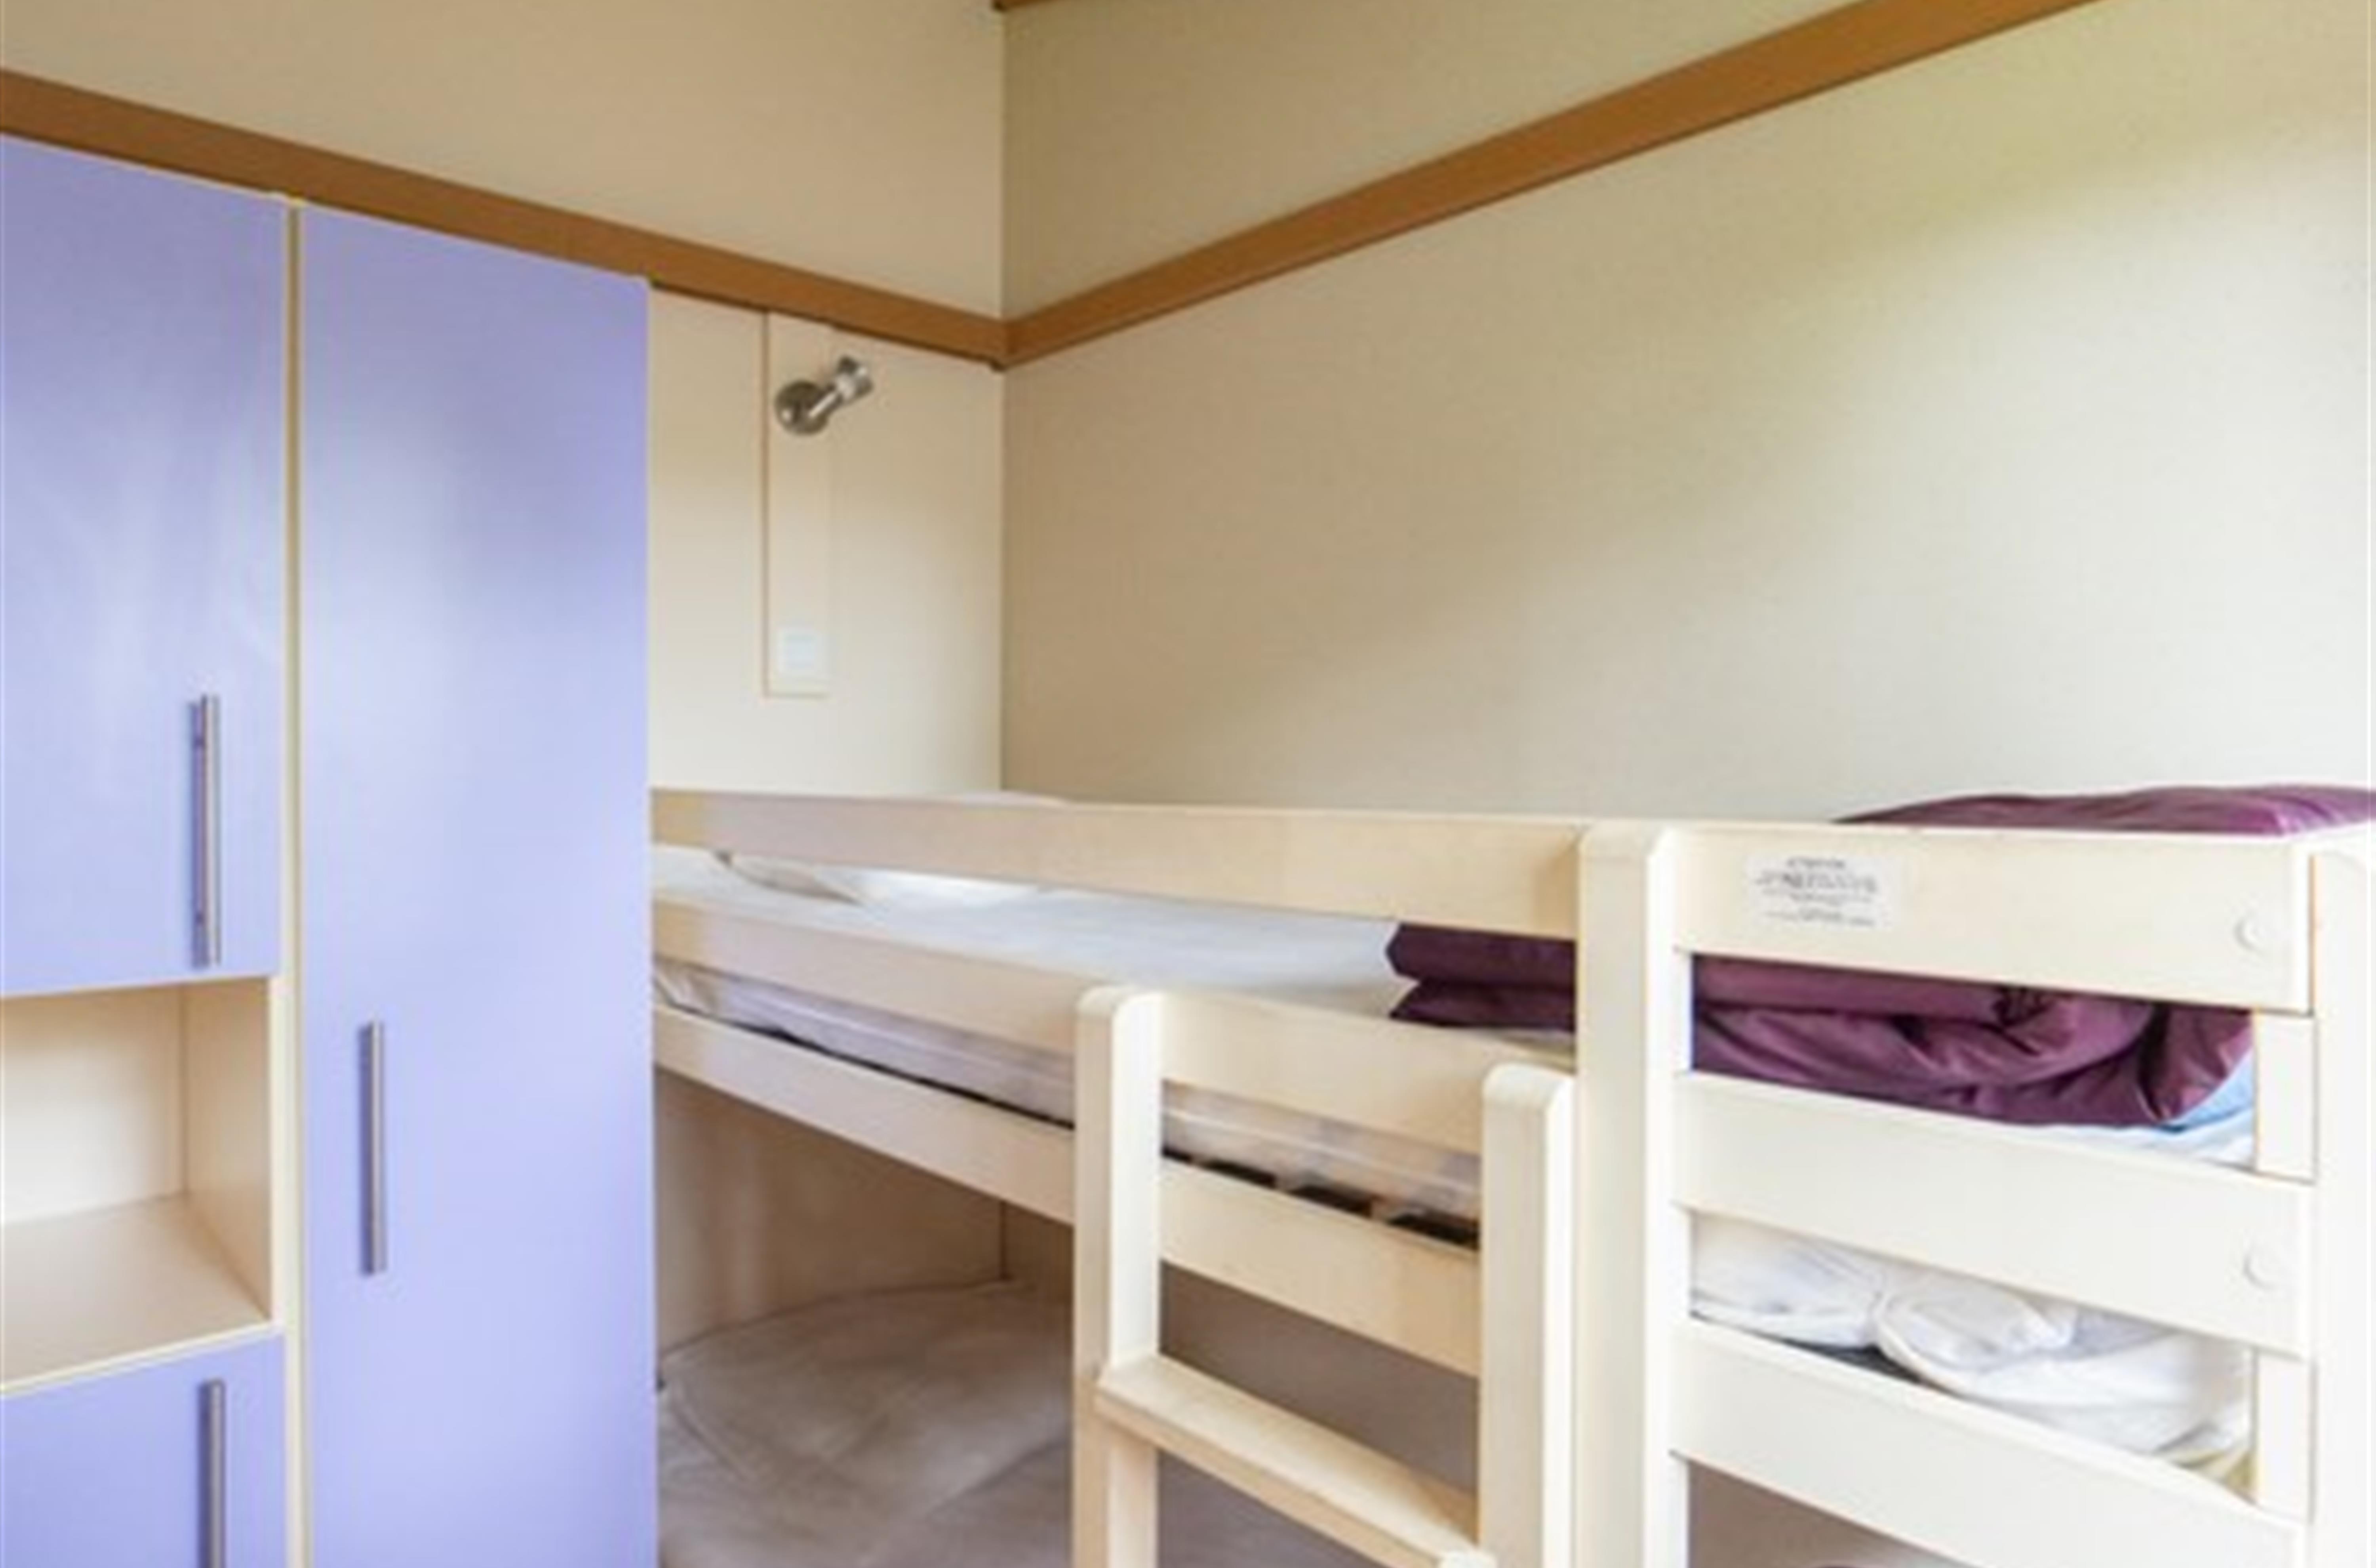 bedroom 2 bunk beds for children